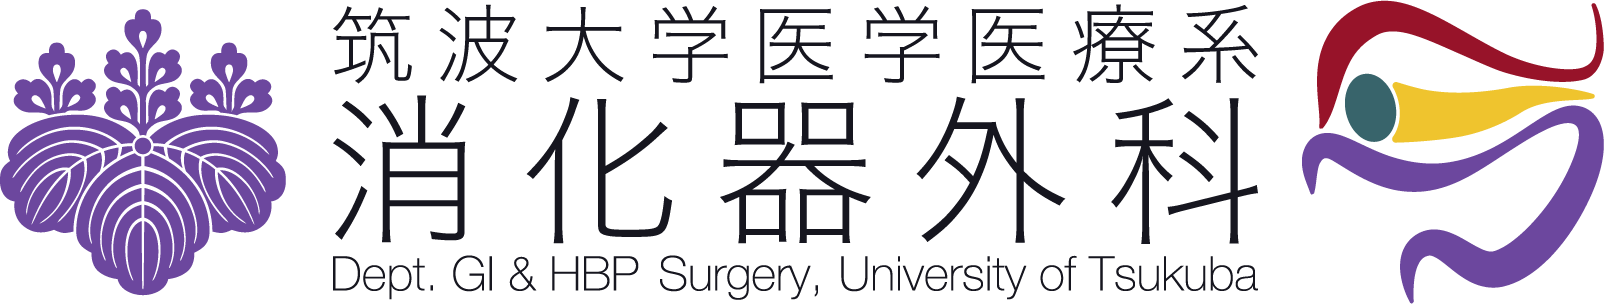 筑波大学消化器外科